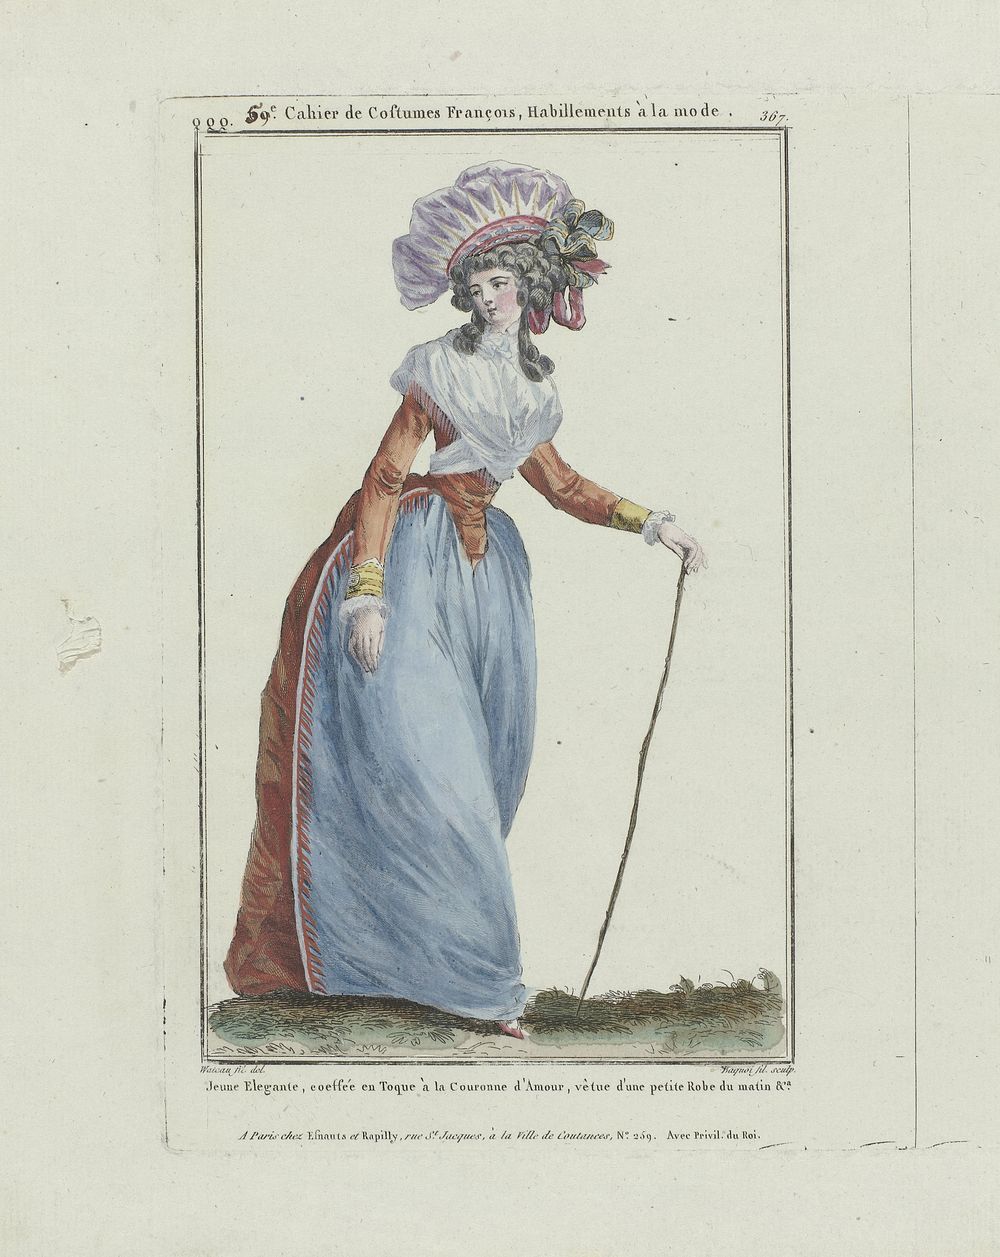 Gallerie des Modes et Costumes Français, 1787, qqq 367 : Jeune Elégante coeffé (...) (1787) by Pierre Charles Baquoy…